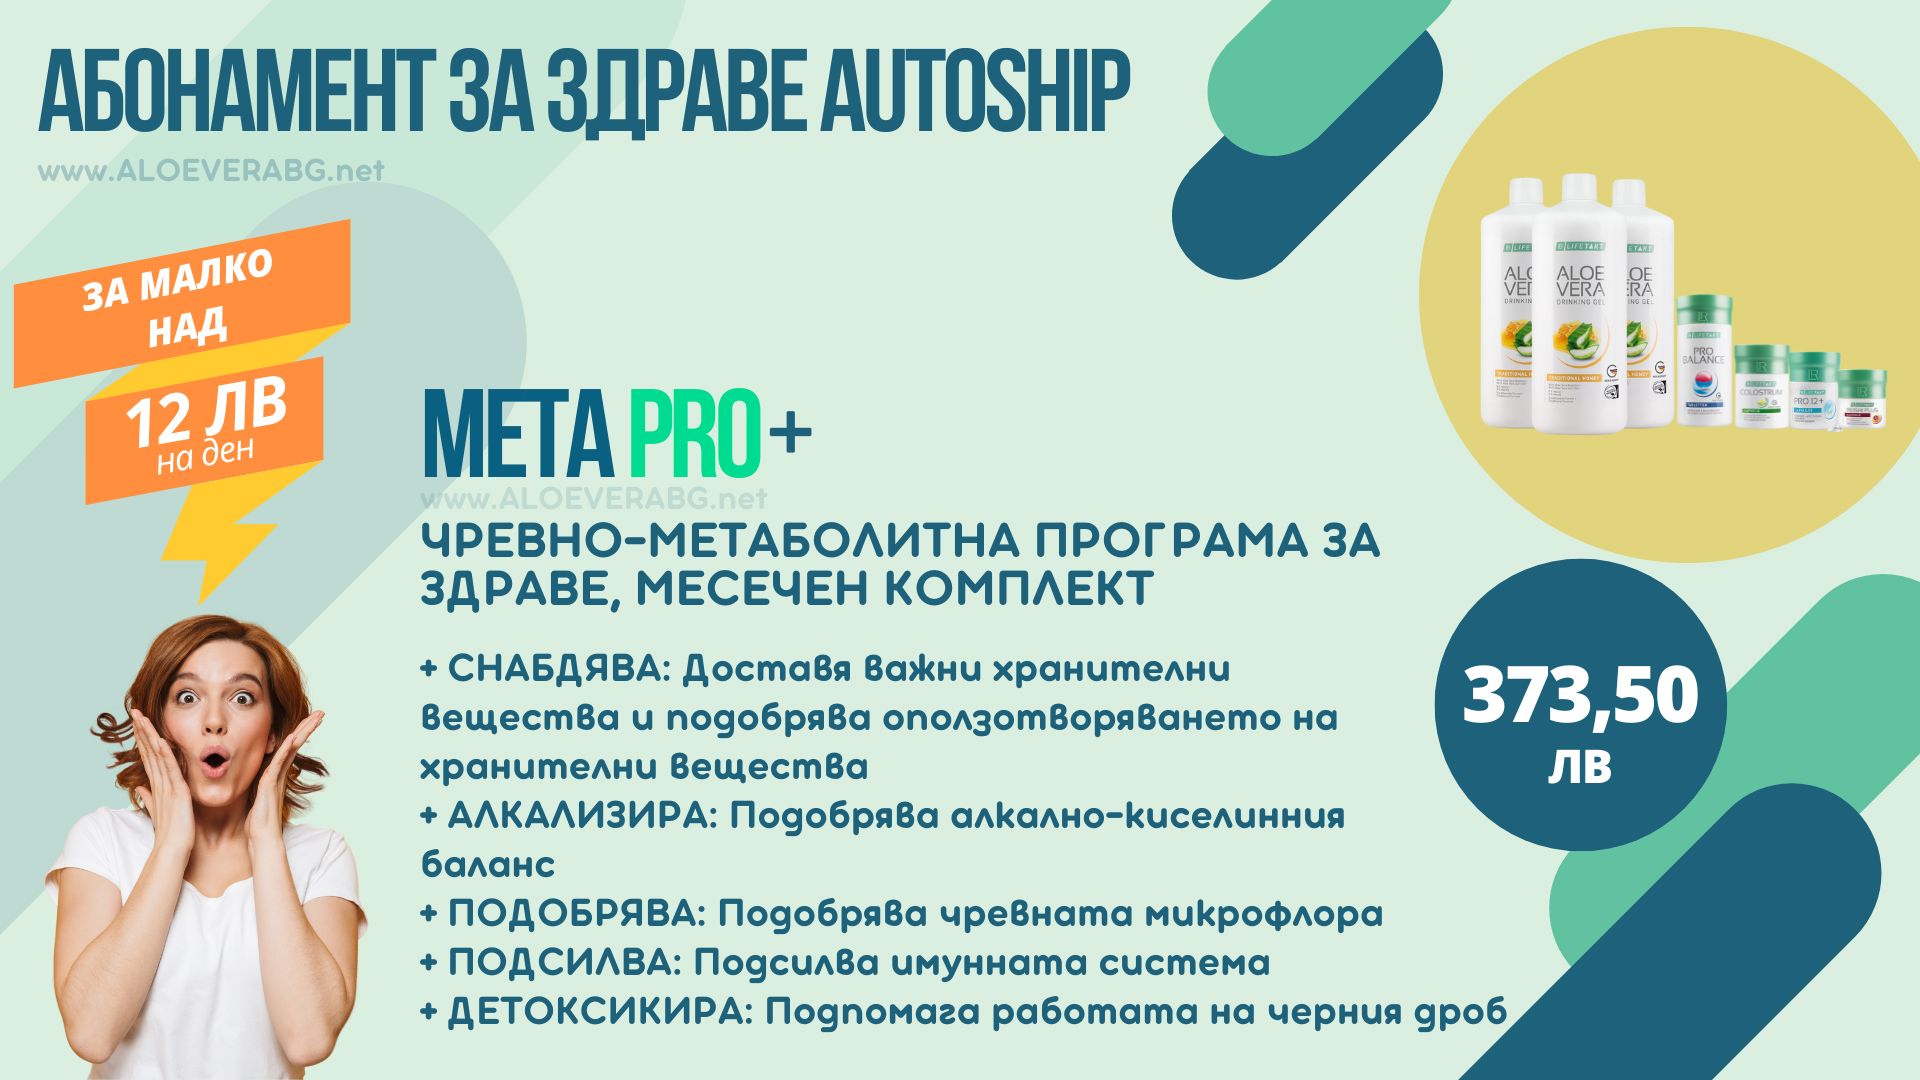 LR Autoship Aloe Vera с Праскова Абонаментна програма за НАЙ-ИЗГОДНА ЦЕНА!